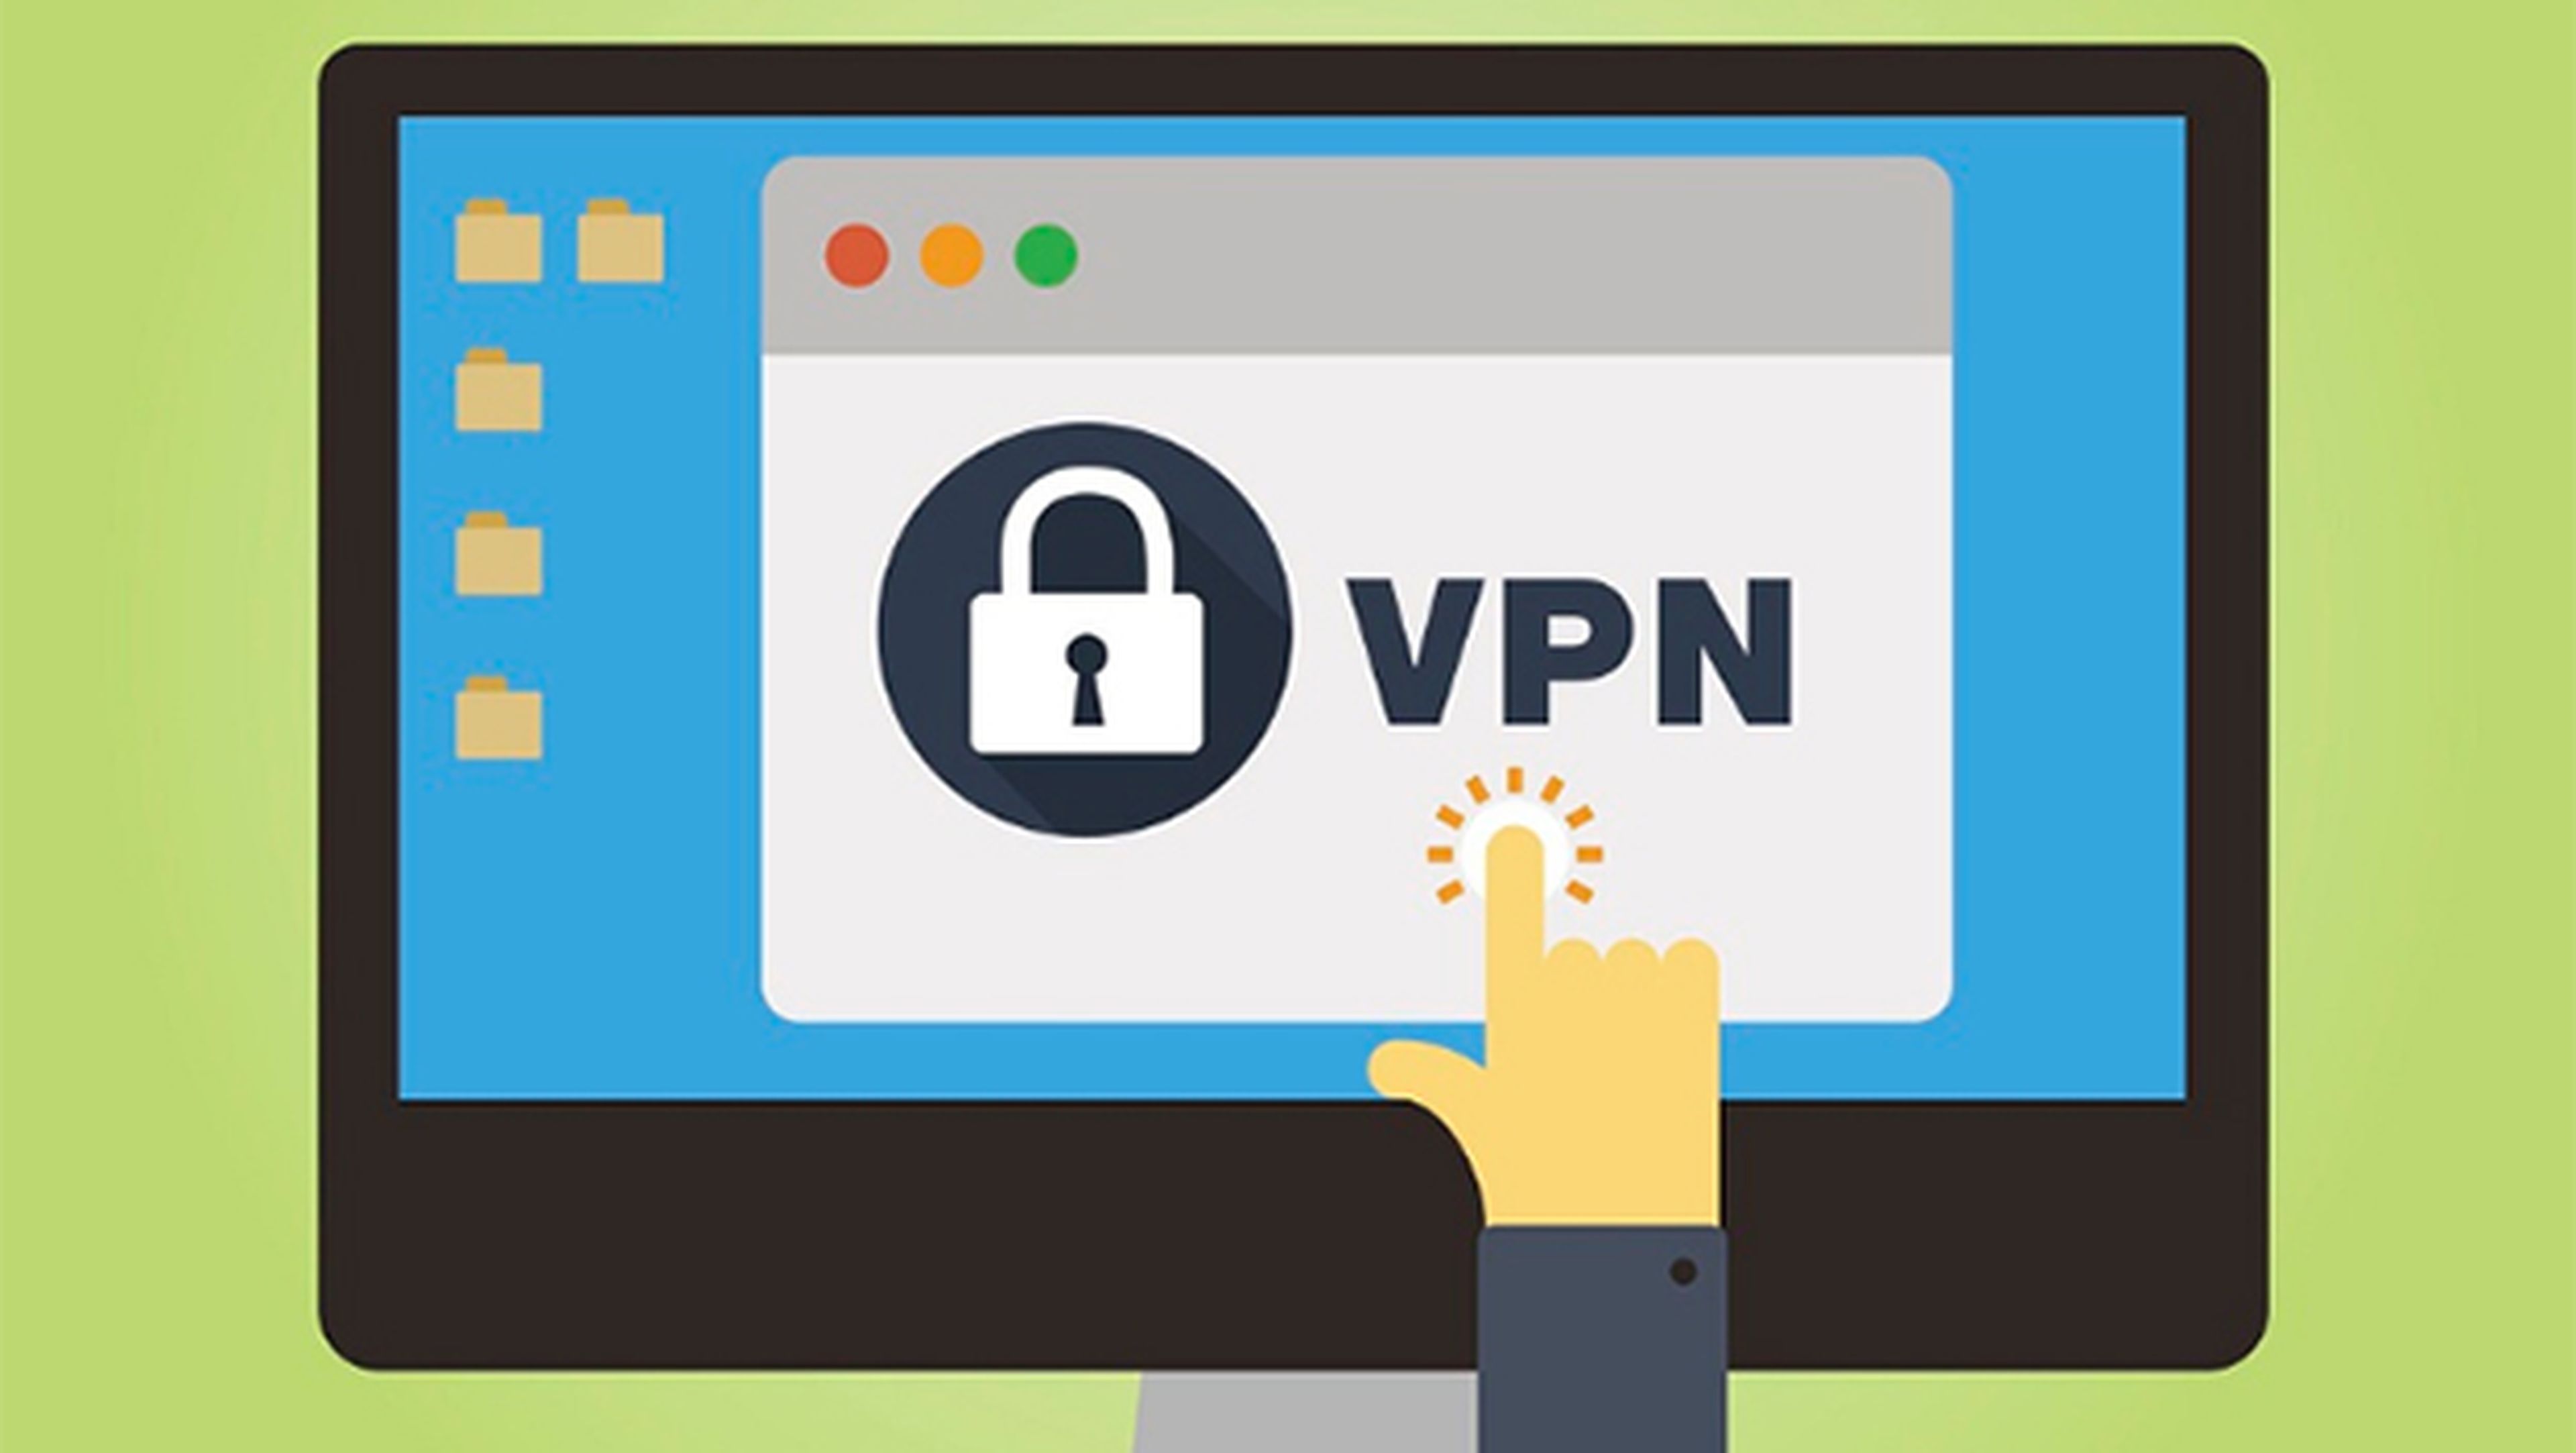 VPN gratis, ventajas y desventajas frente a los de pago